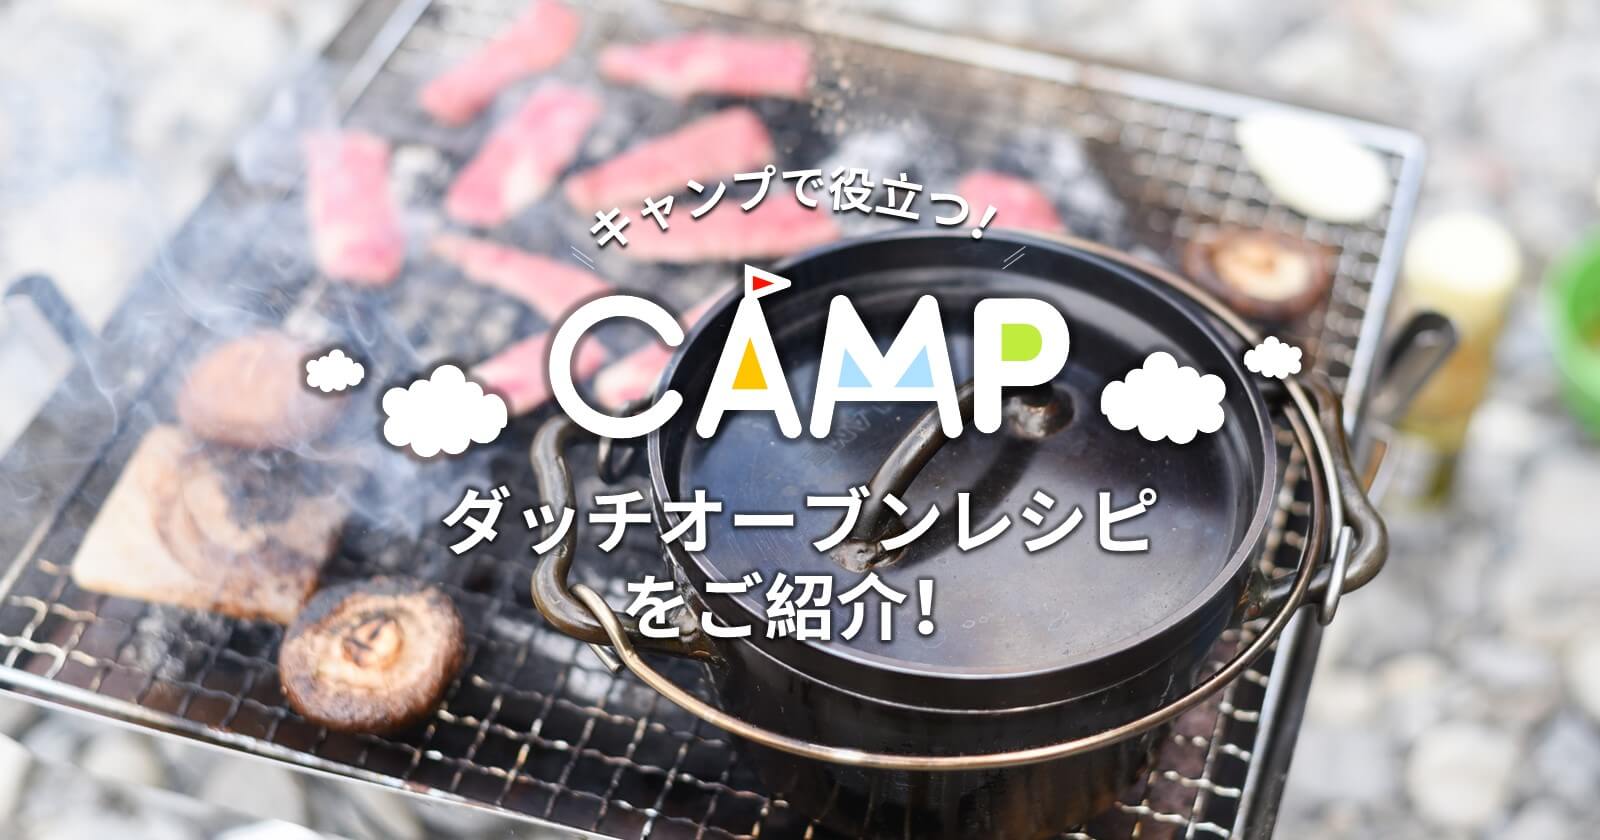 キャンプで役立つ おすすめのダッチオーブンレシピをご紹介 キャンプ アウトドアのtakibi タキビ